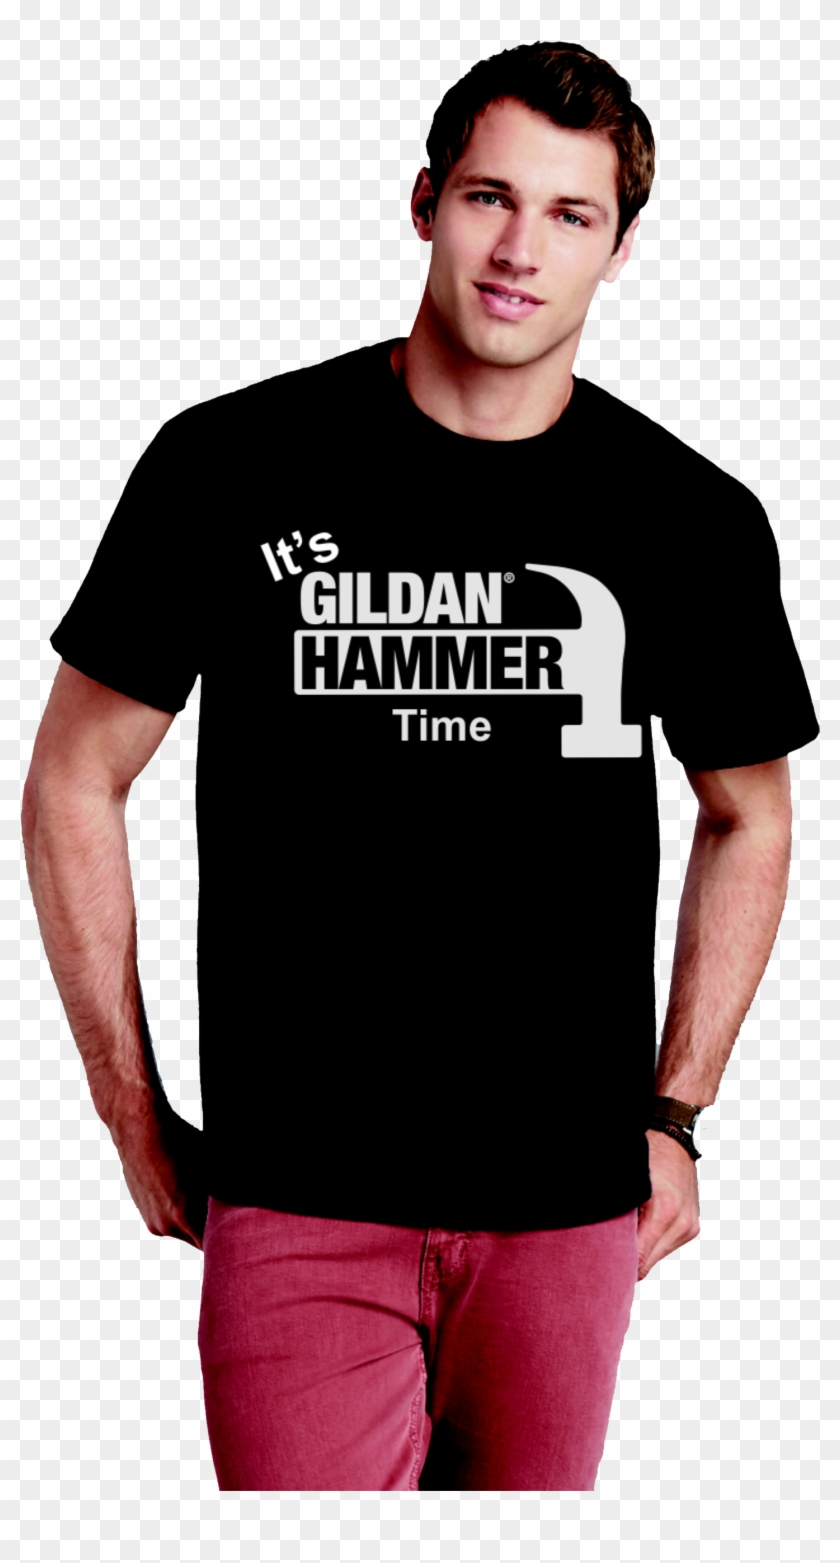 Hammer-man - Man T Shirt Png #1347171